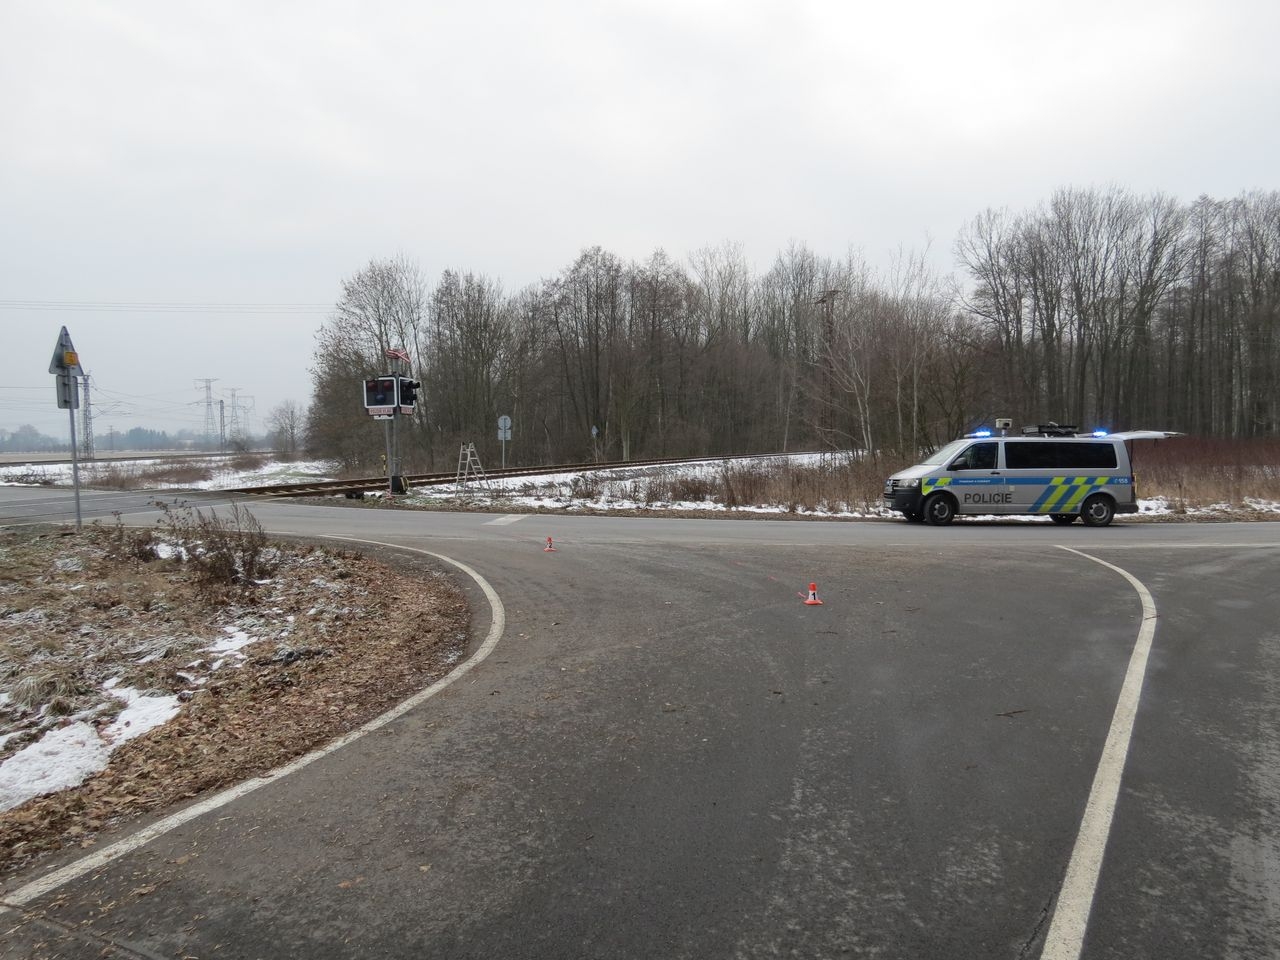 Šumpersko - poškozené zabezpečovací zařízení železničního přejezdu zdroj foto: PČR